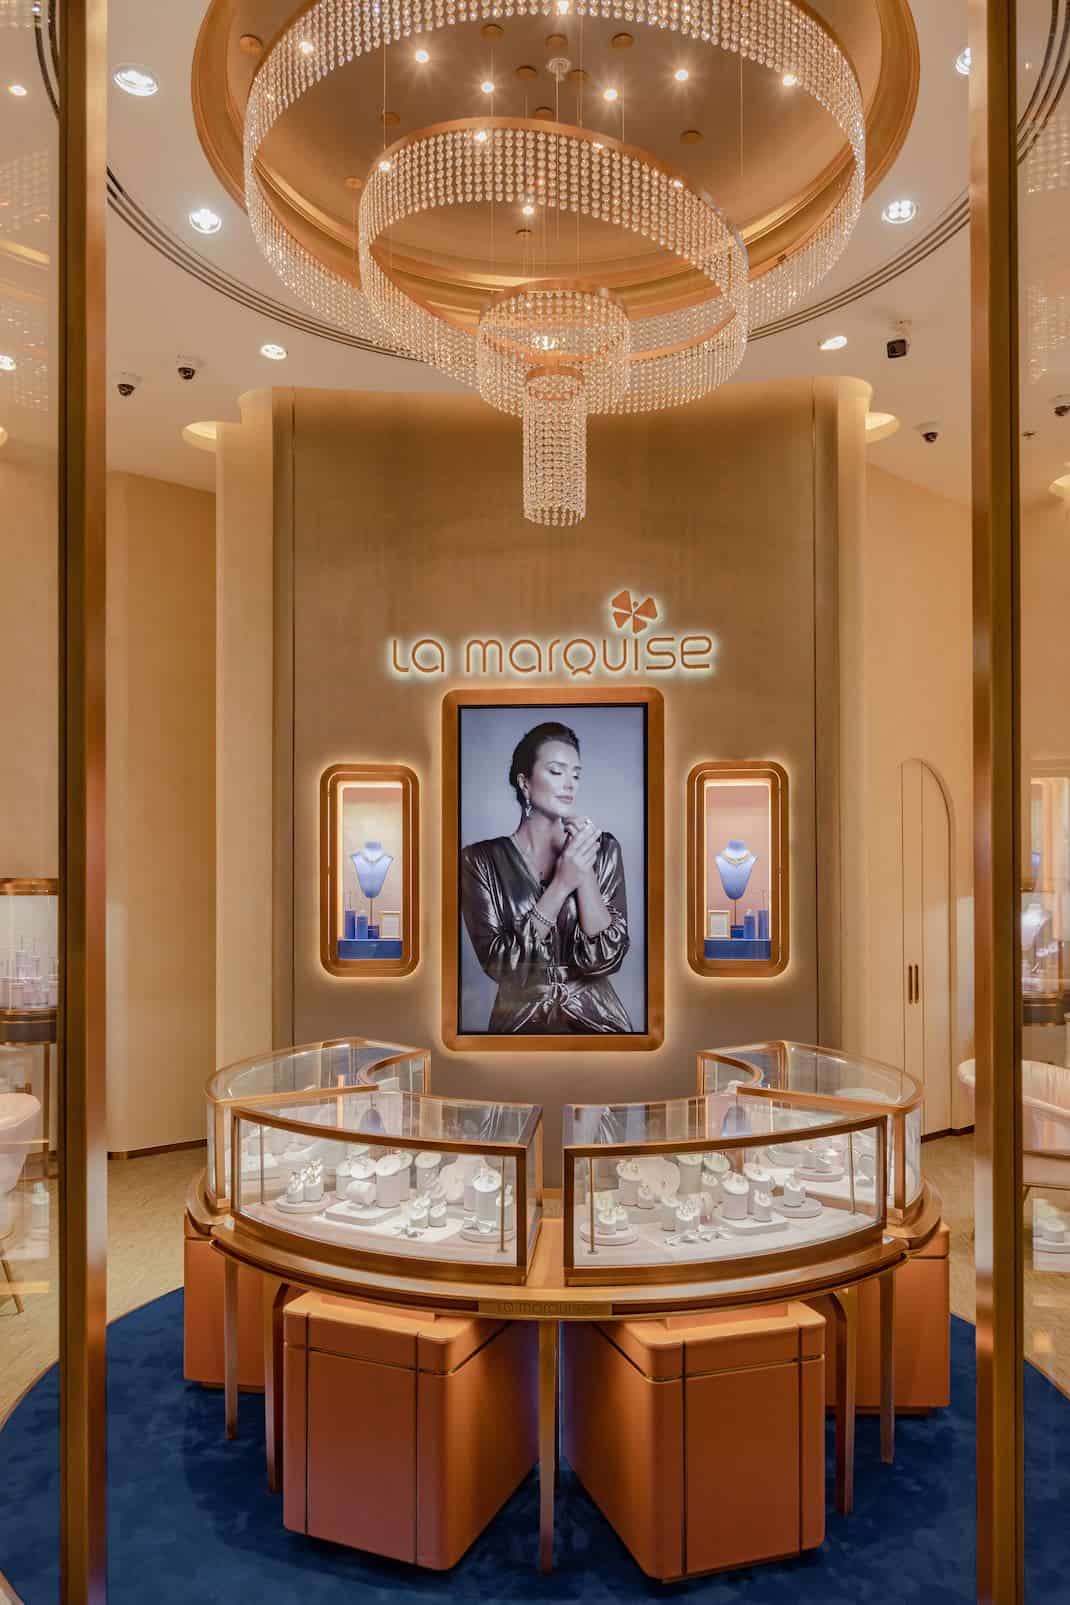 แบรนด์ LA MARQUISE Jewellery เปิดแฟล็กชิปสโตร์ใน The Dubai Mall